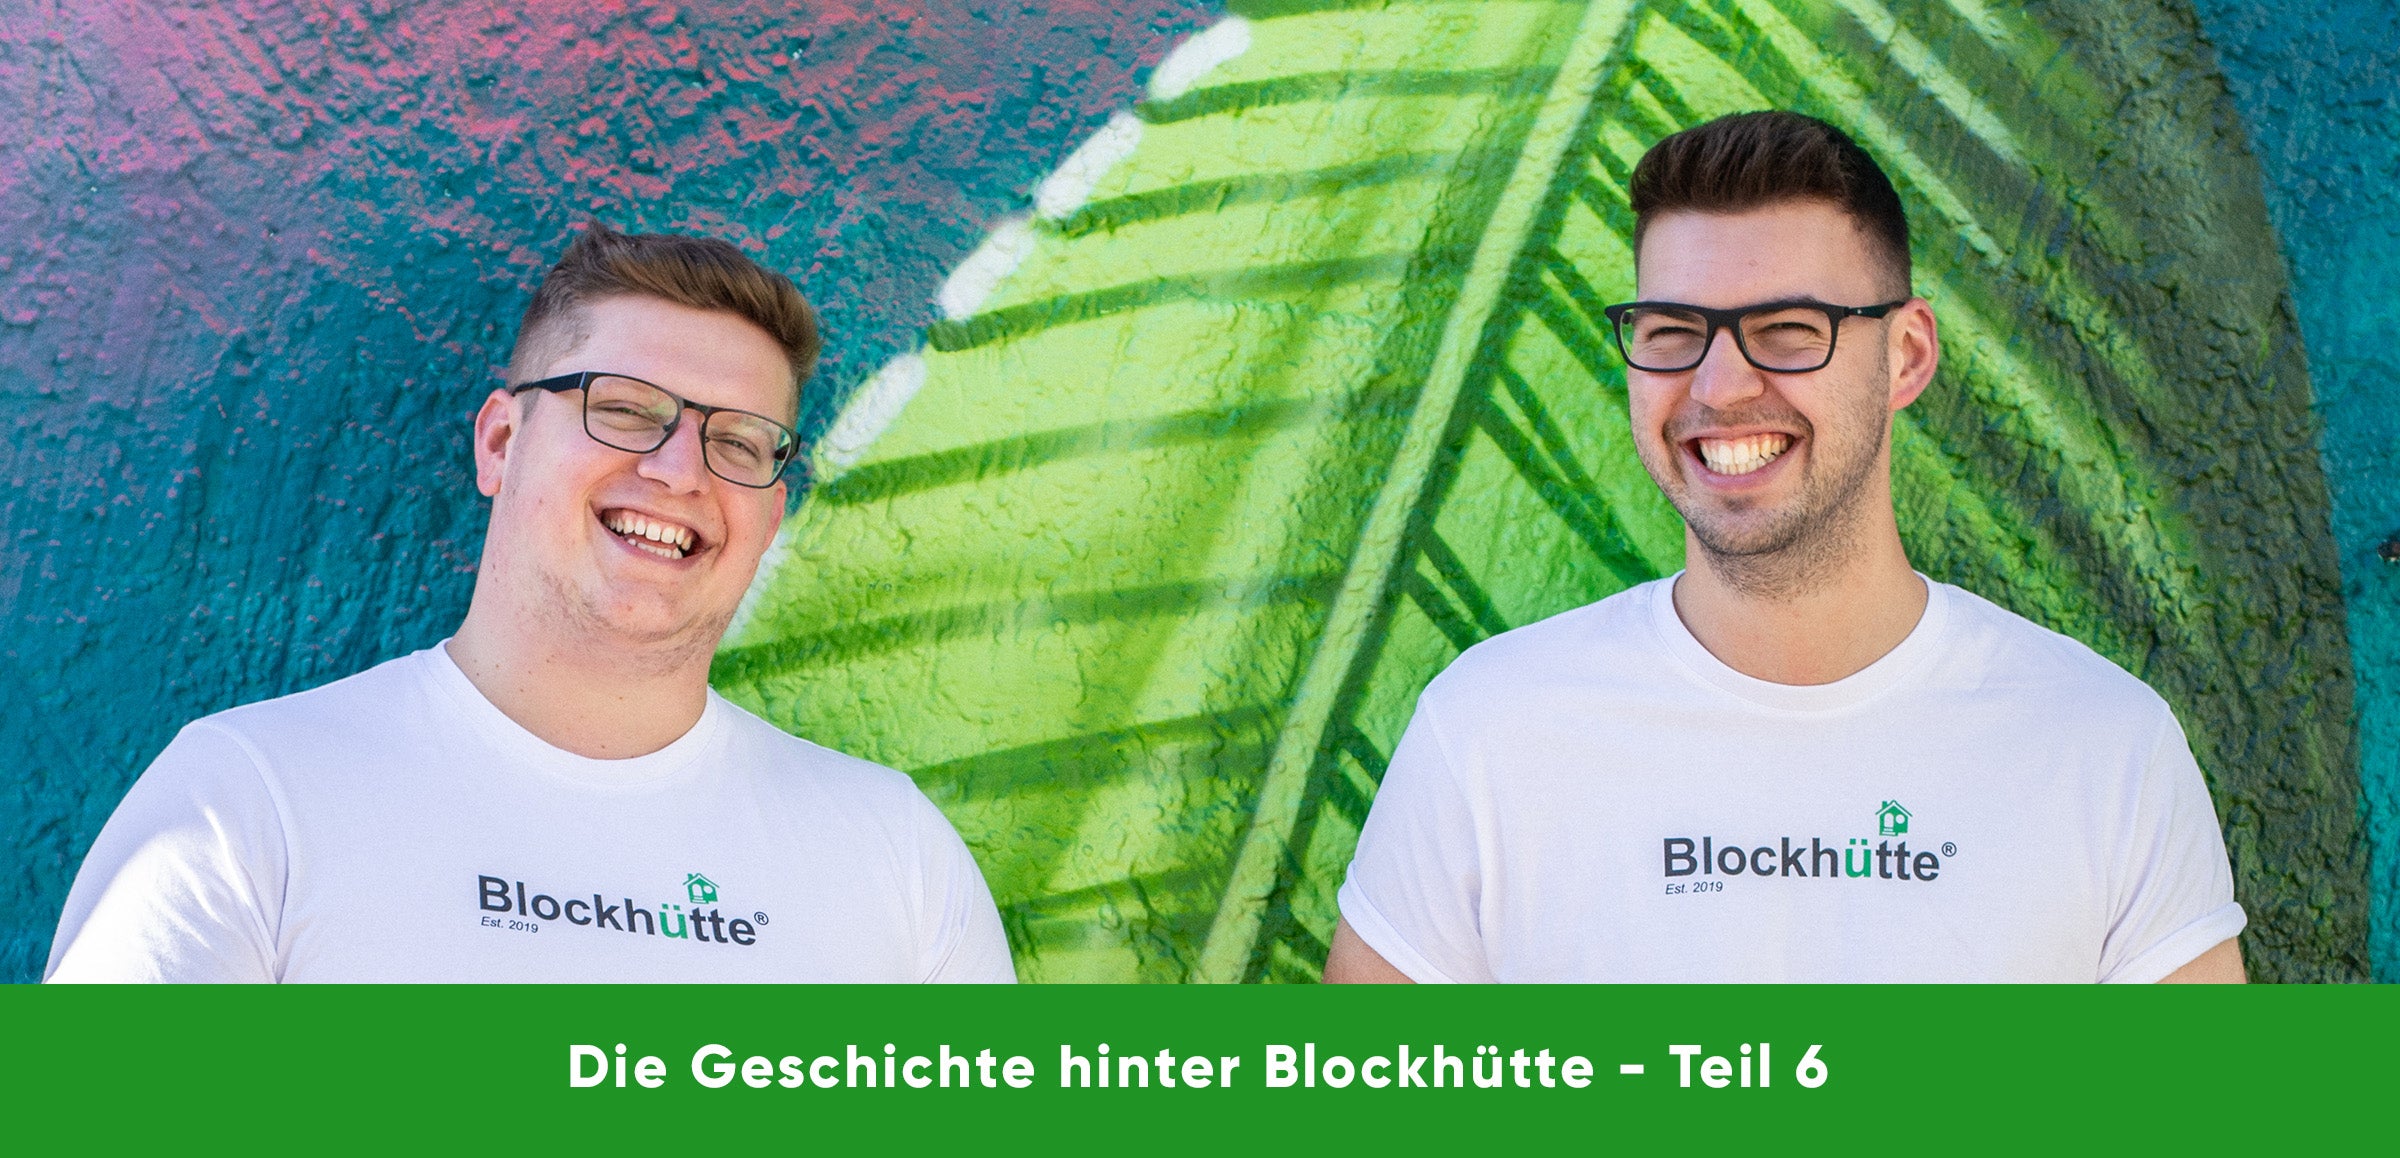 Nils und Malte, die Gründer von Blockhütte, gemeinsam lachend vor einer Wand